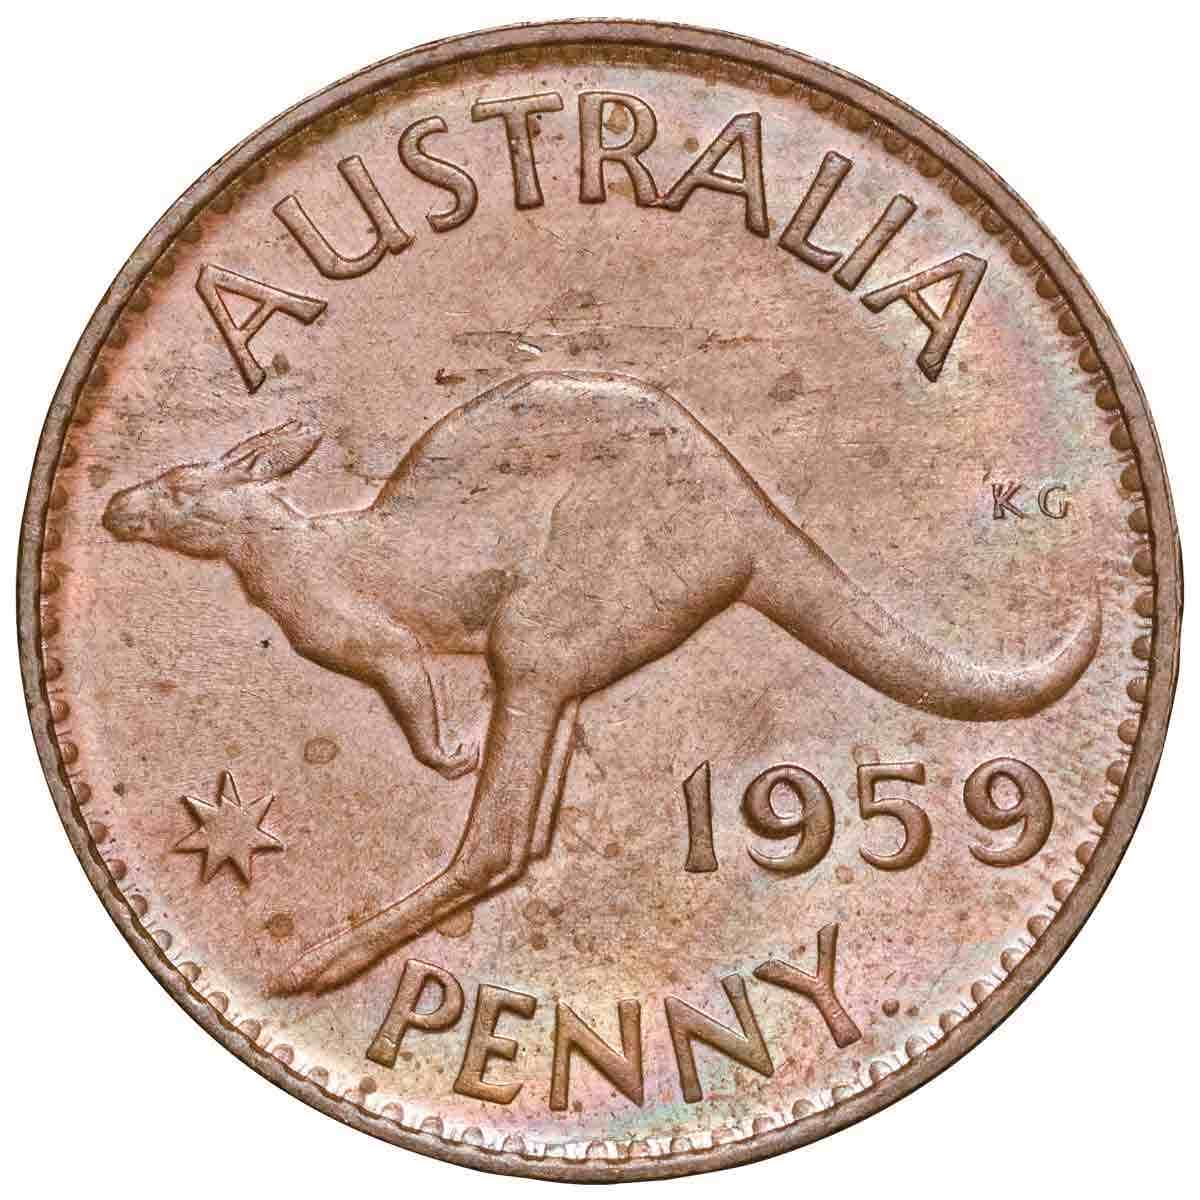 1959Y Penny Uncirculated